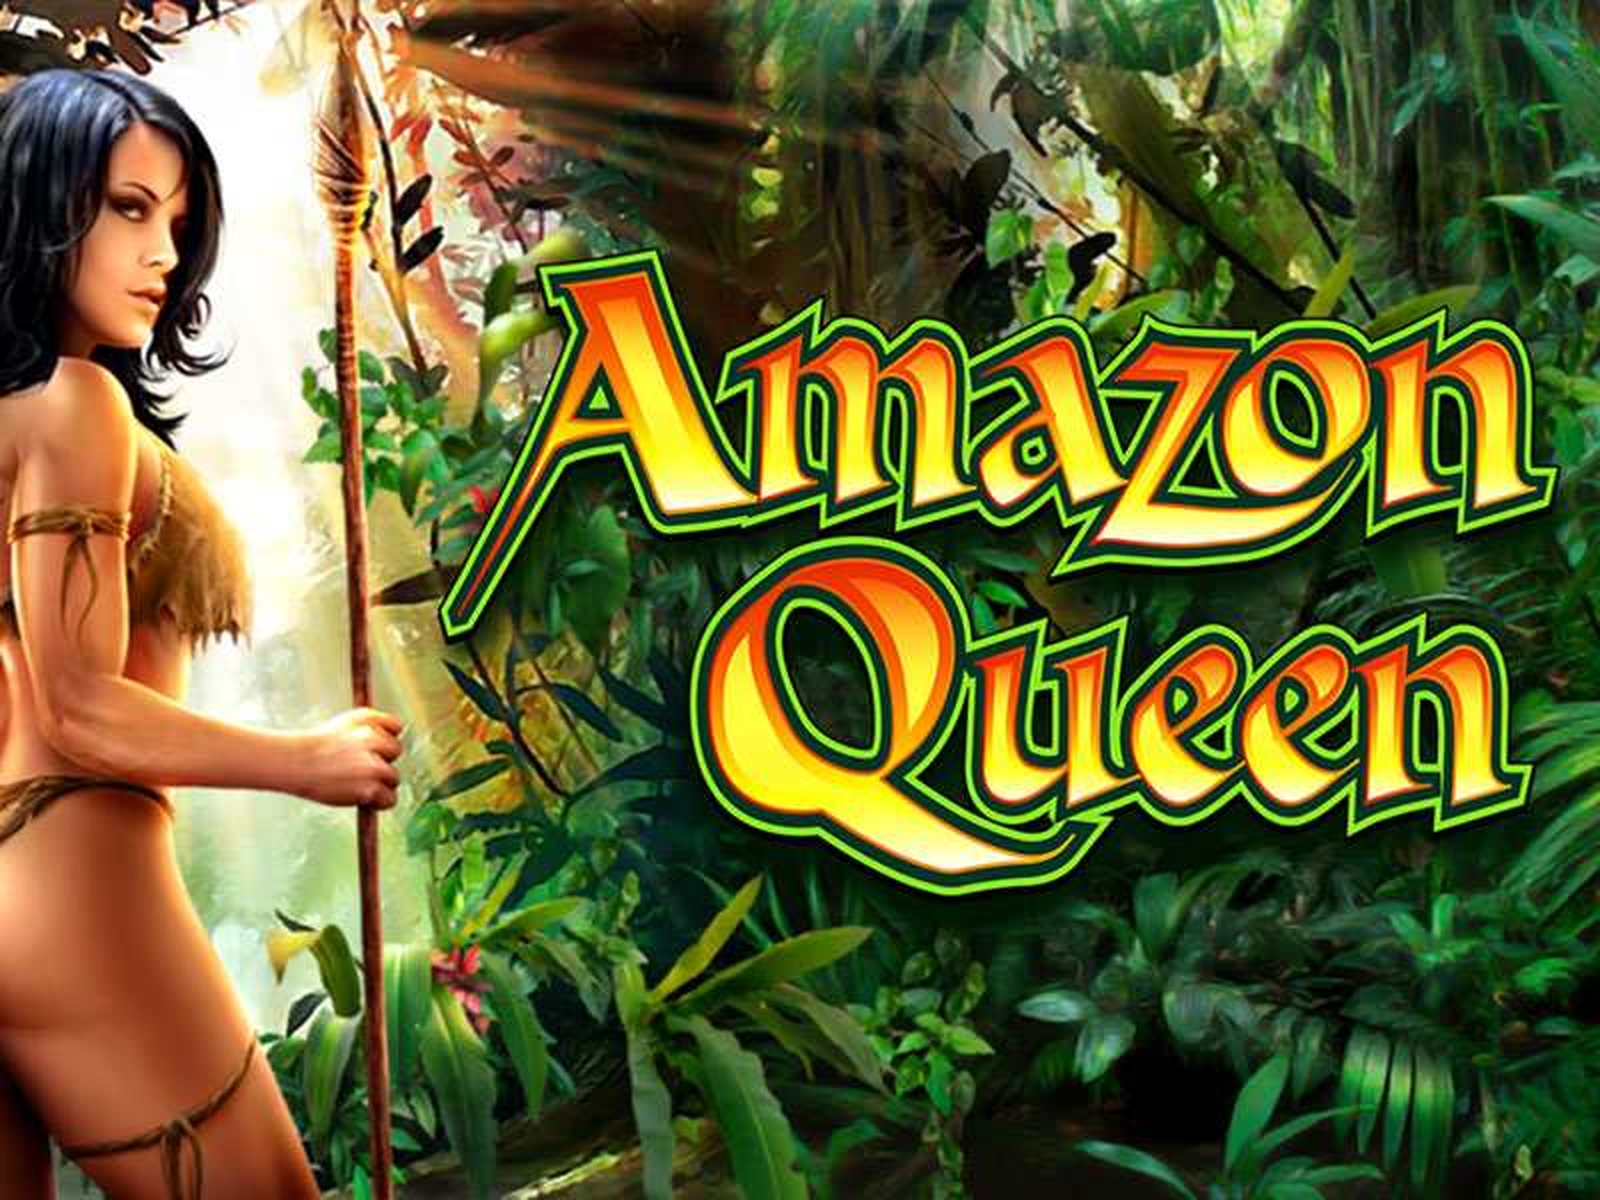 Amazon Queen